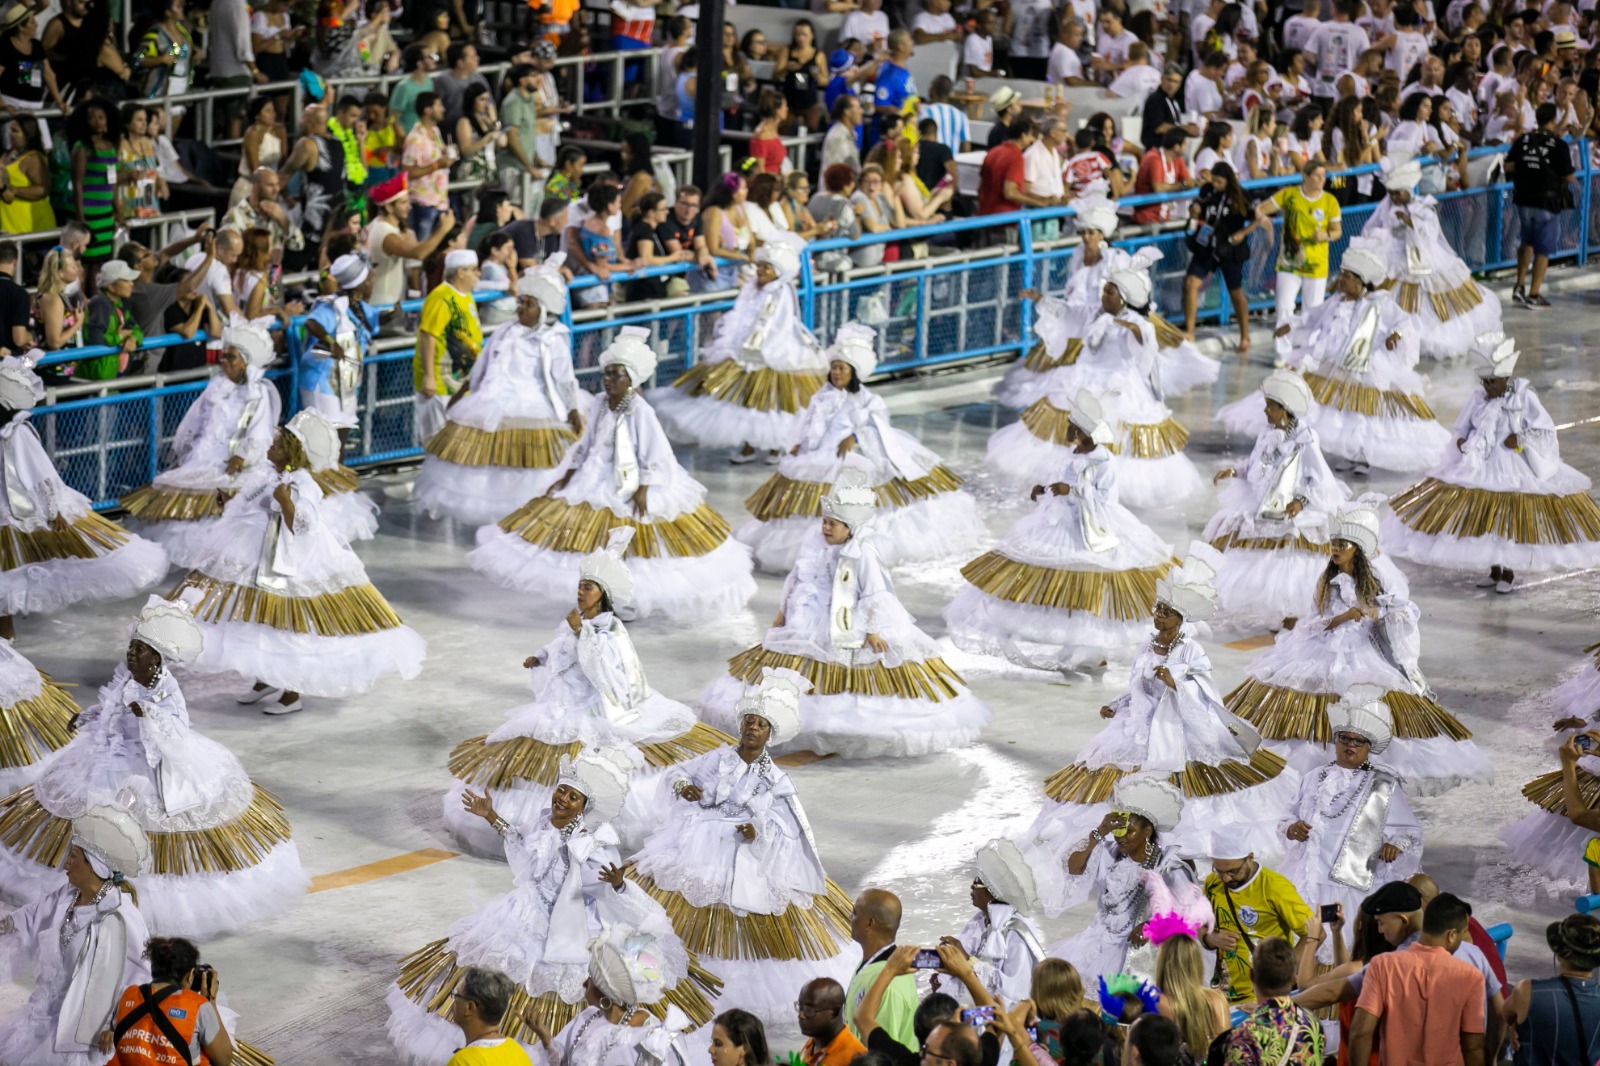 Este ano, os recursos para os desfiles de Carnaval na Marquês de Sapucaí somam R$ 38 milhões - Foto: Rafael Campos/Governo do Rio/divulgação